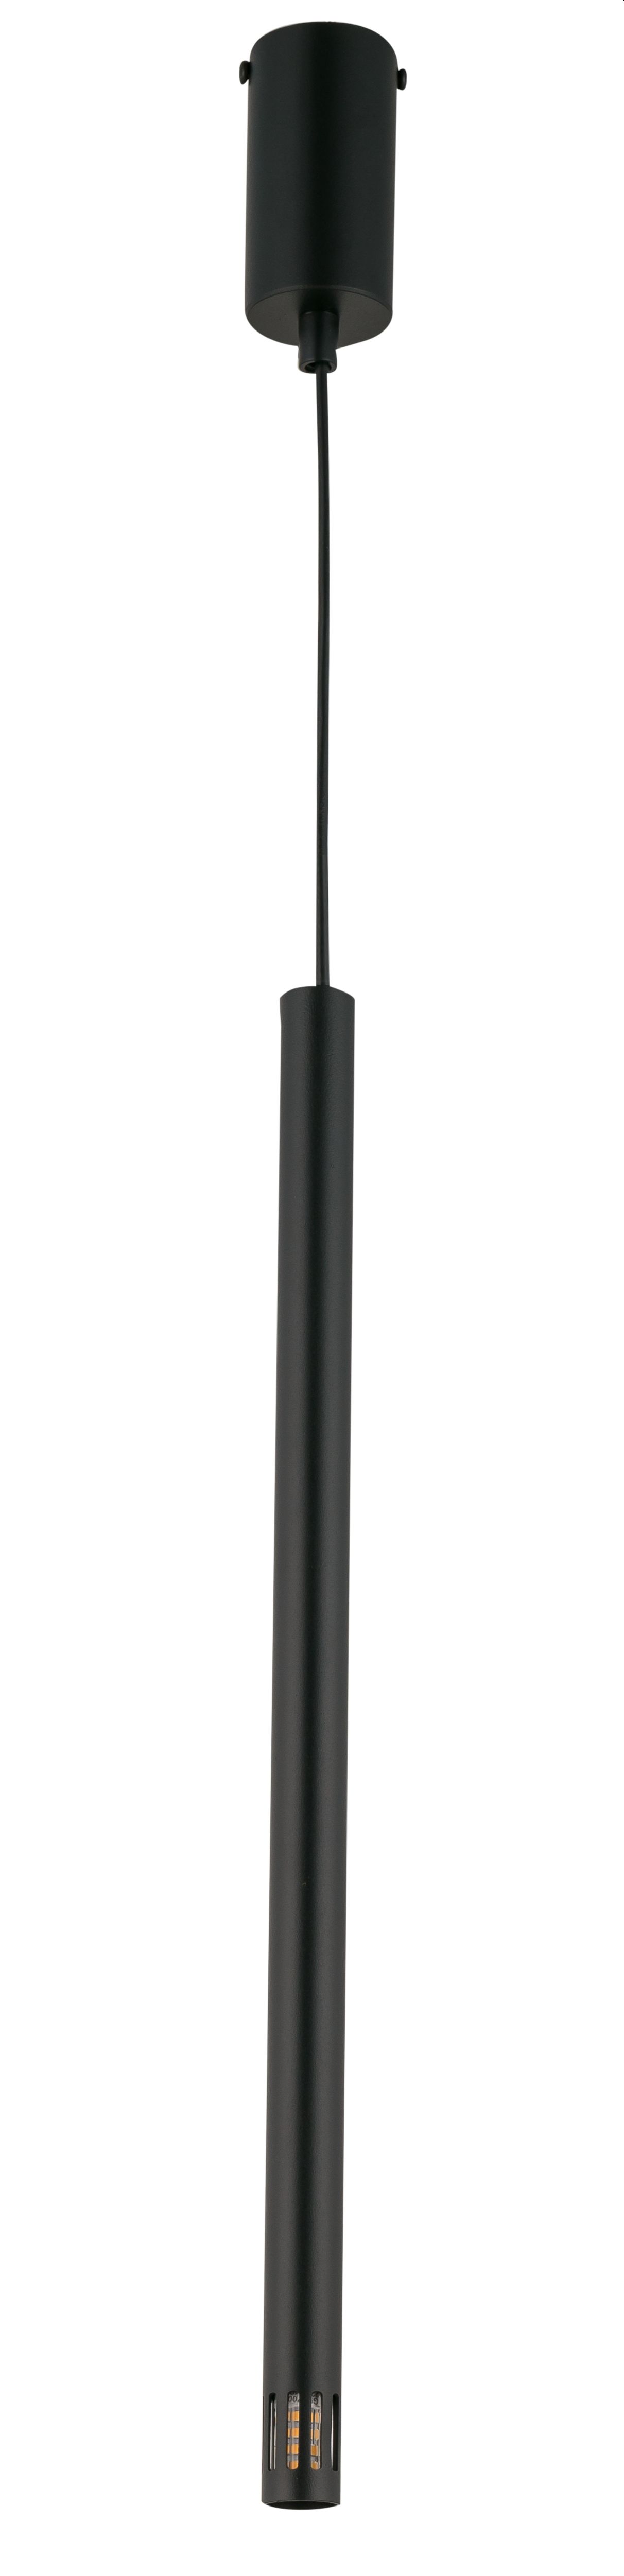 Schwarze Hängelampe Metall Zylinder G9 Ø5 cm rund